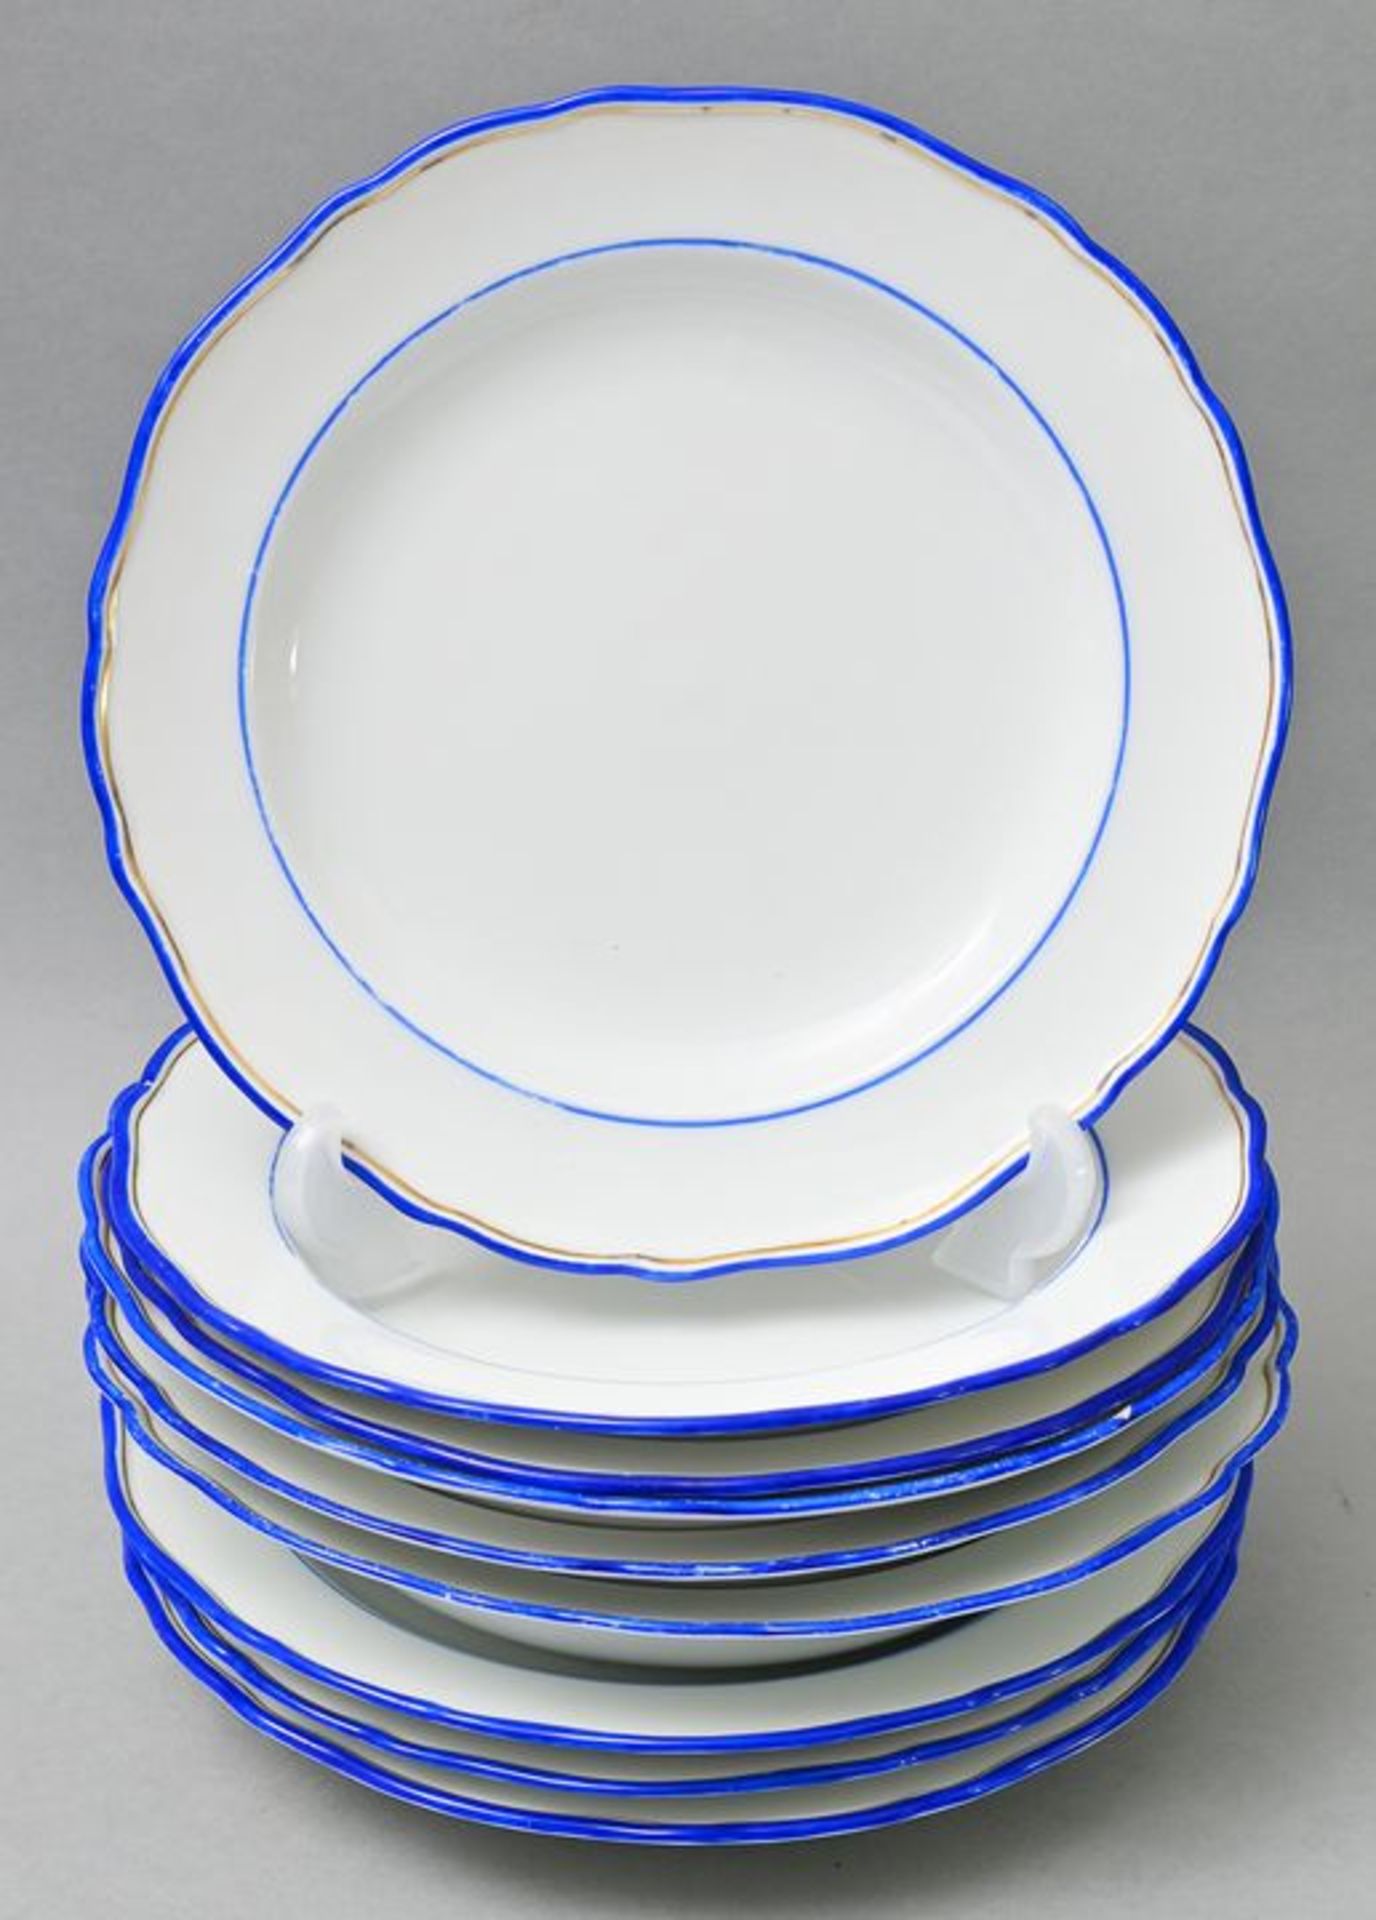 Neun Teller / nine plates